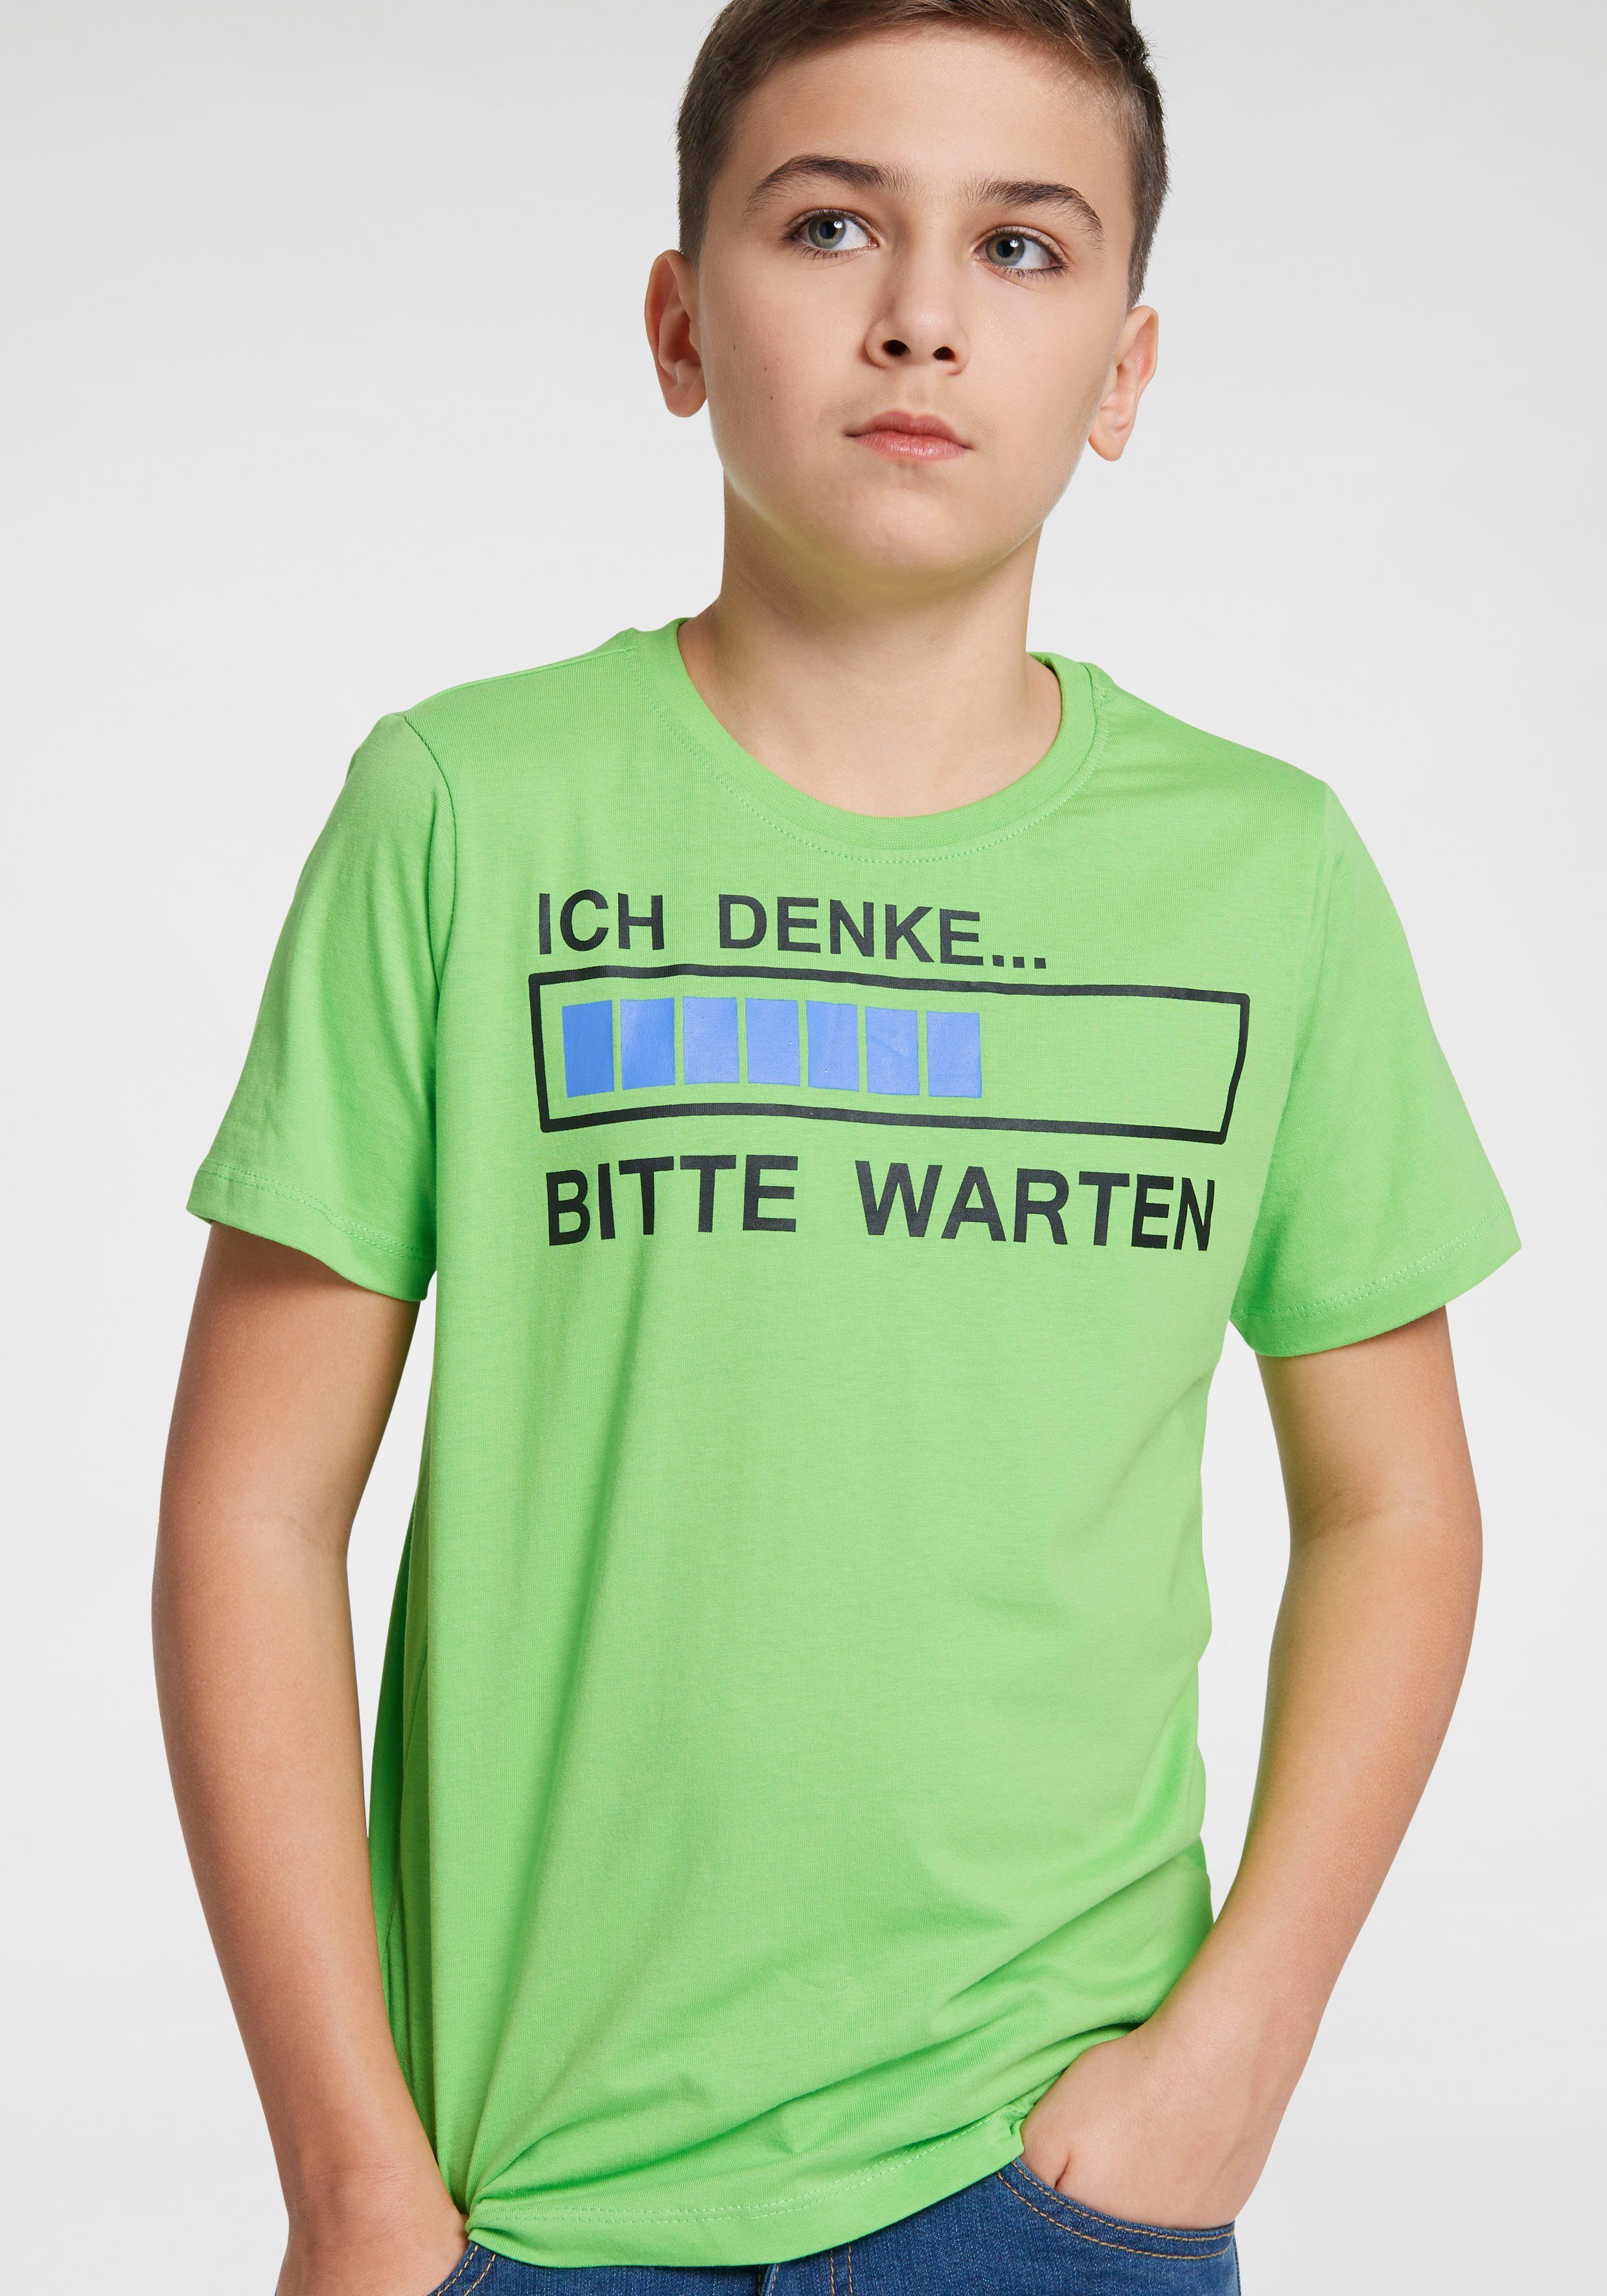 T-Shirt KIDSWORLD Spruch WARTEN DENKE...BITTE ICH